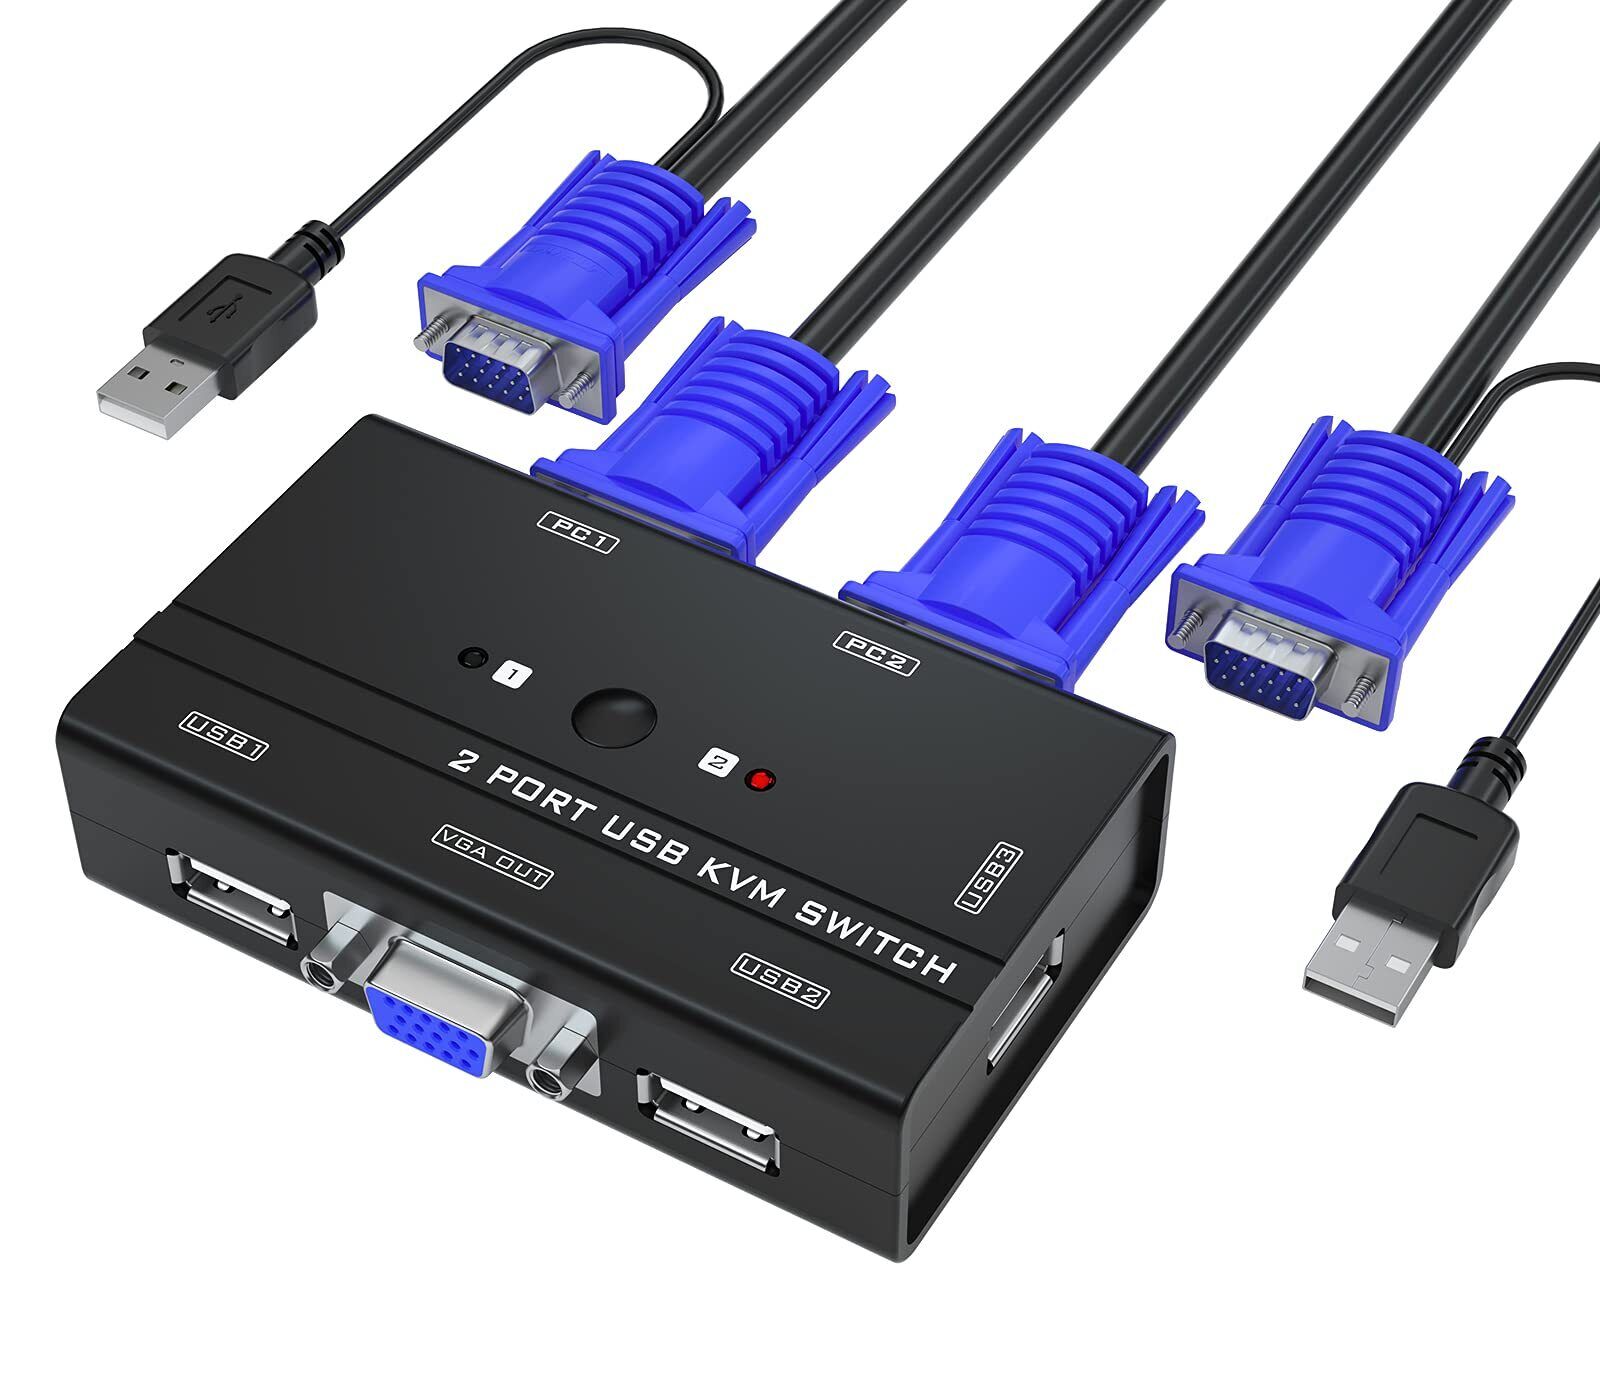 Yinker VGA KVM Switch, 2 Port USB VGA KVM Switch w/2 KVM Cables & 3 USB Hubs for